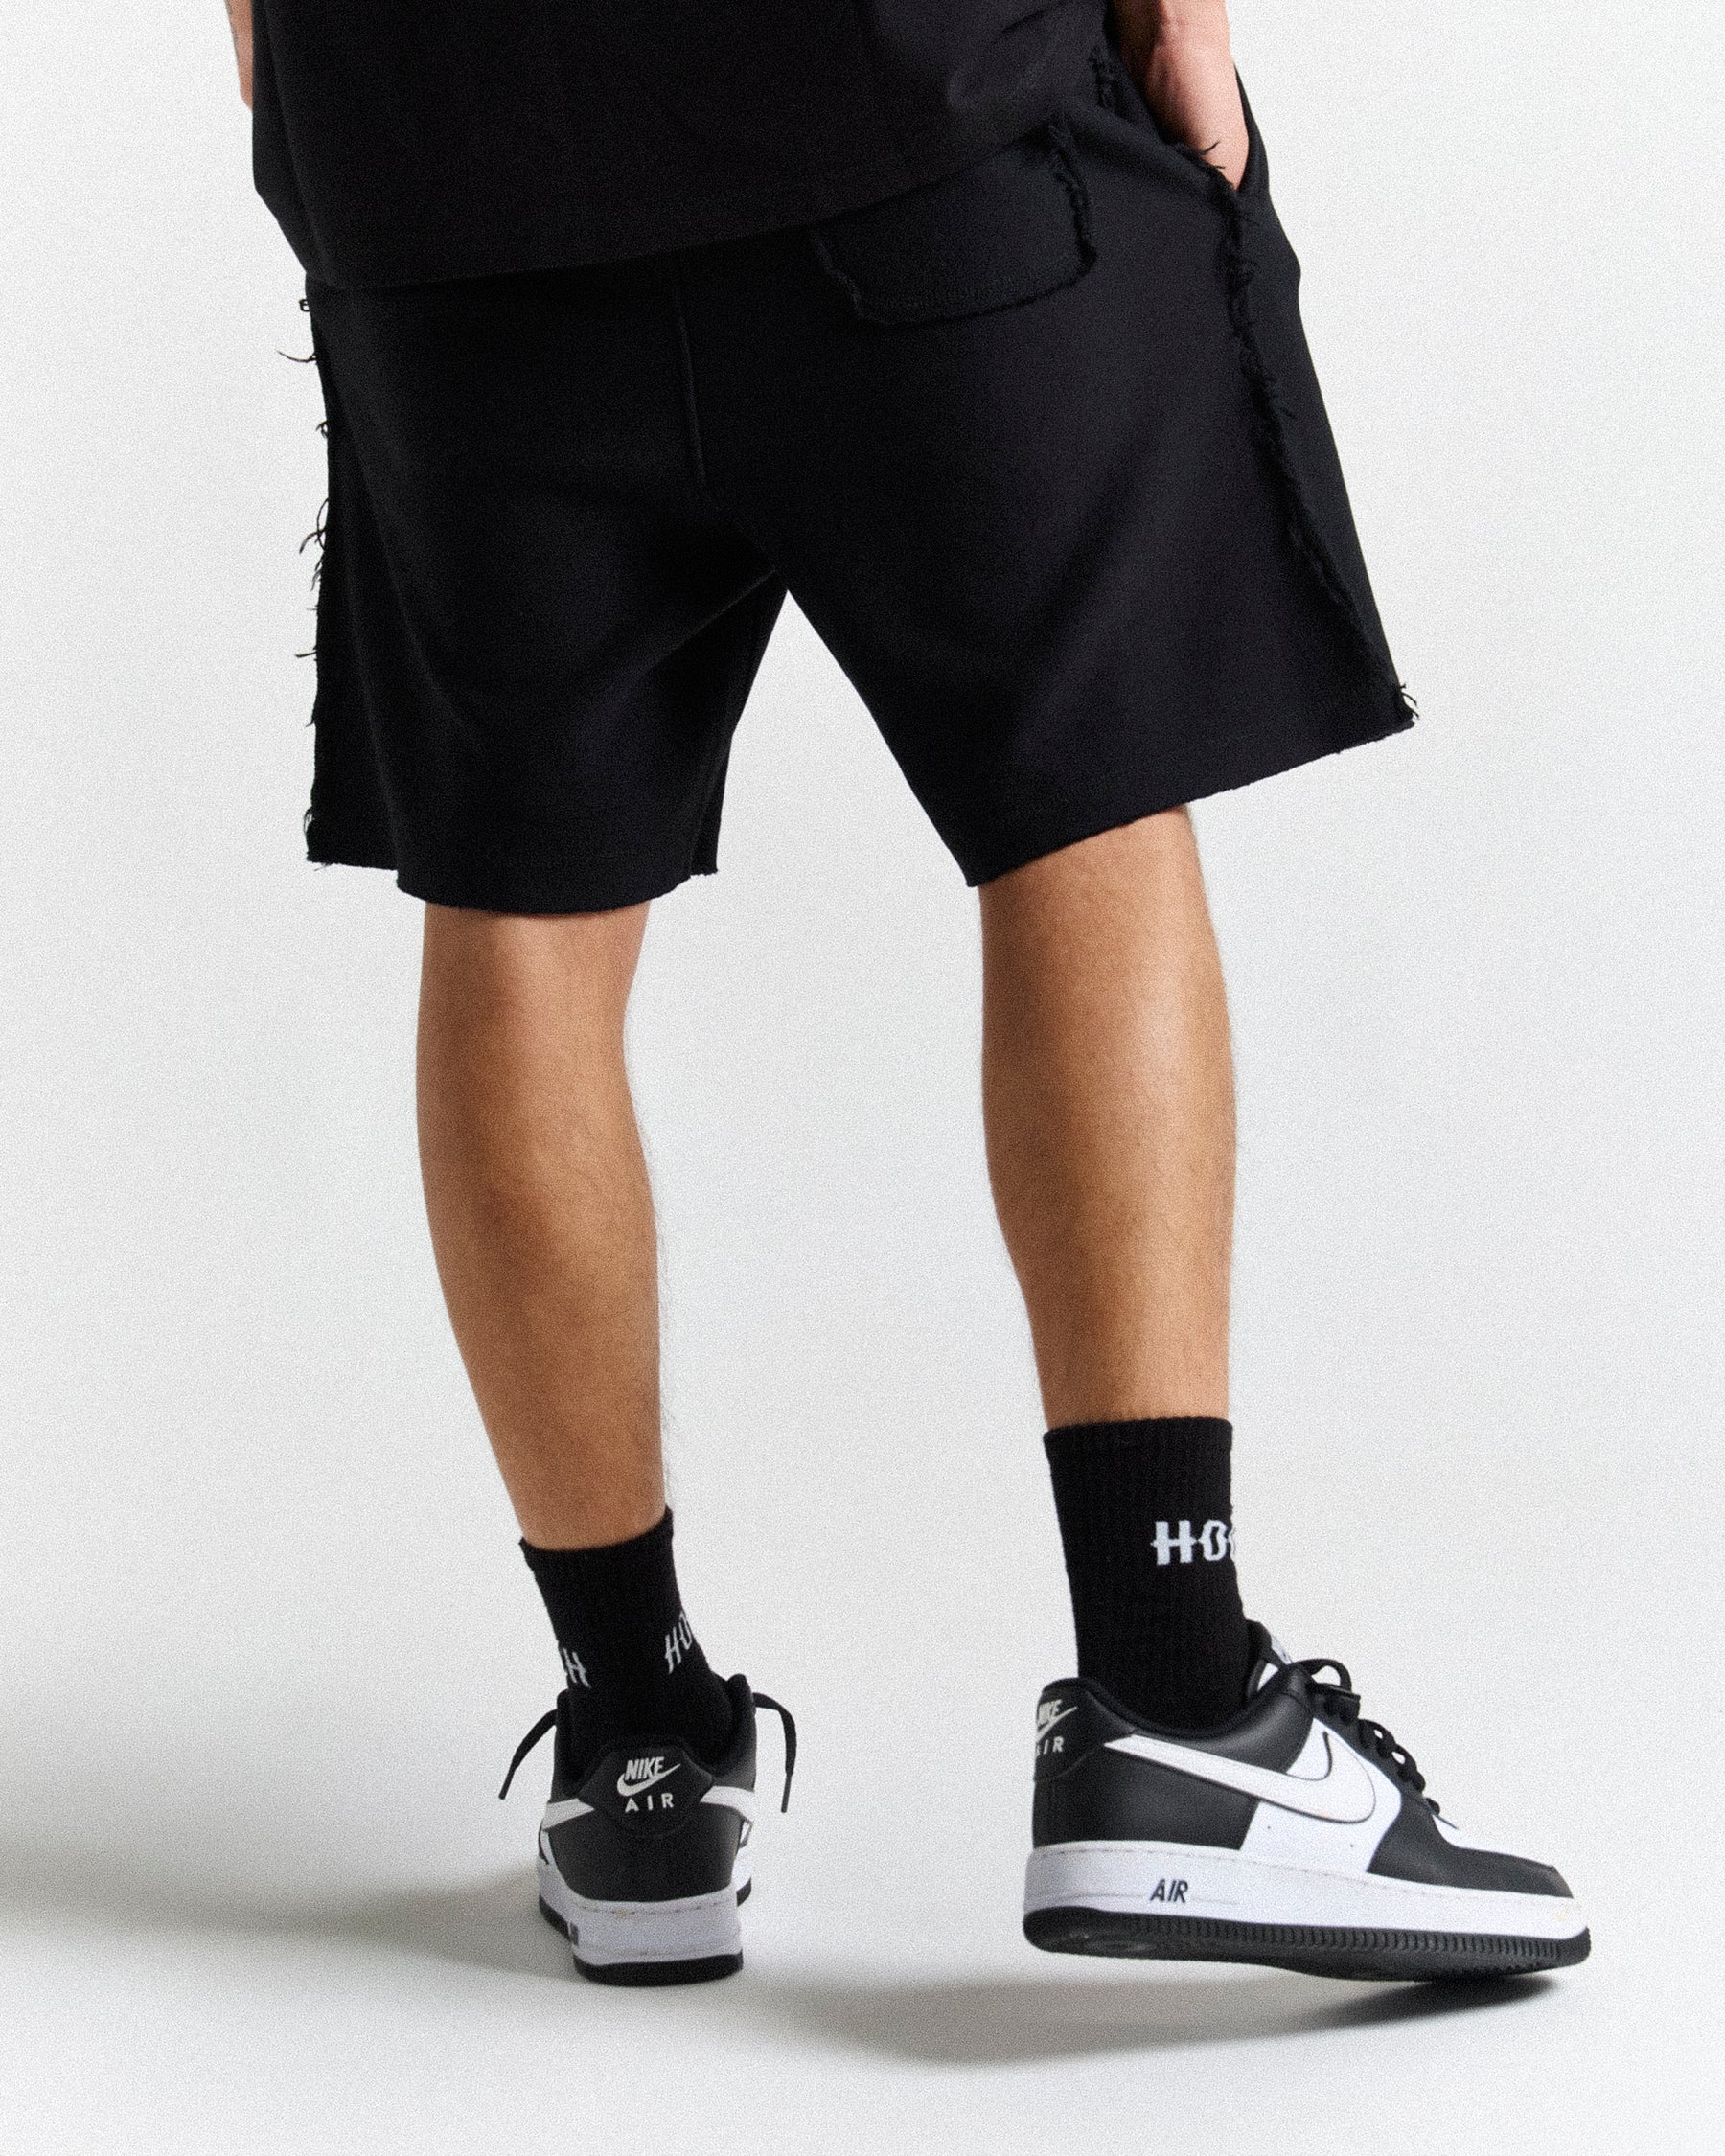 Helix Oversized Shorts - Black/White